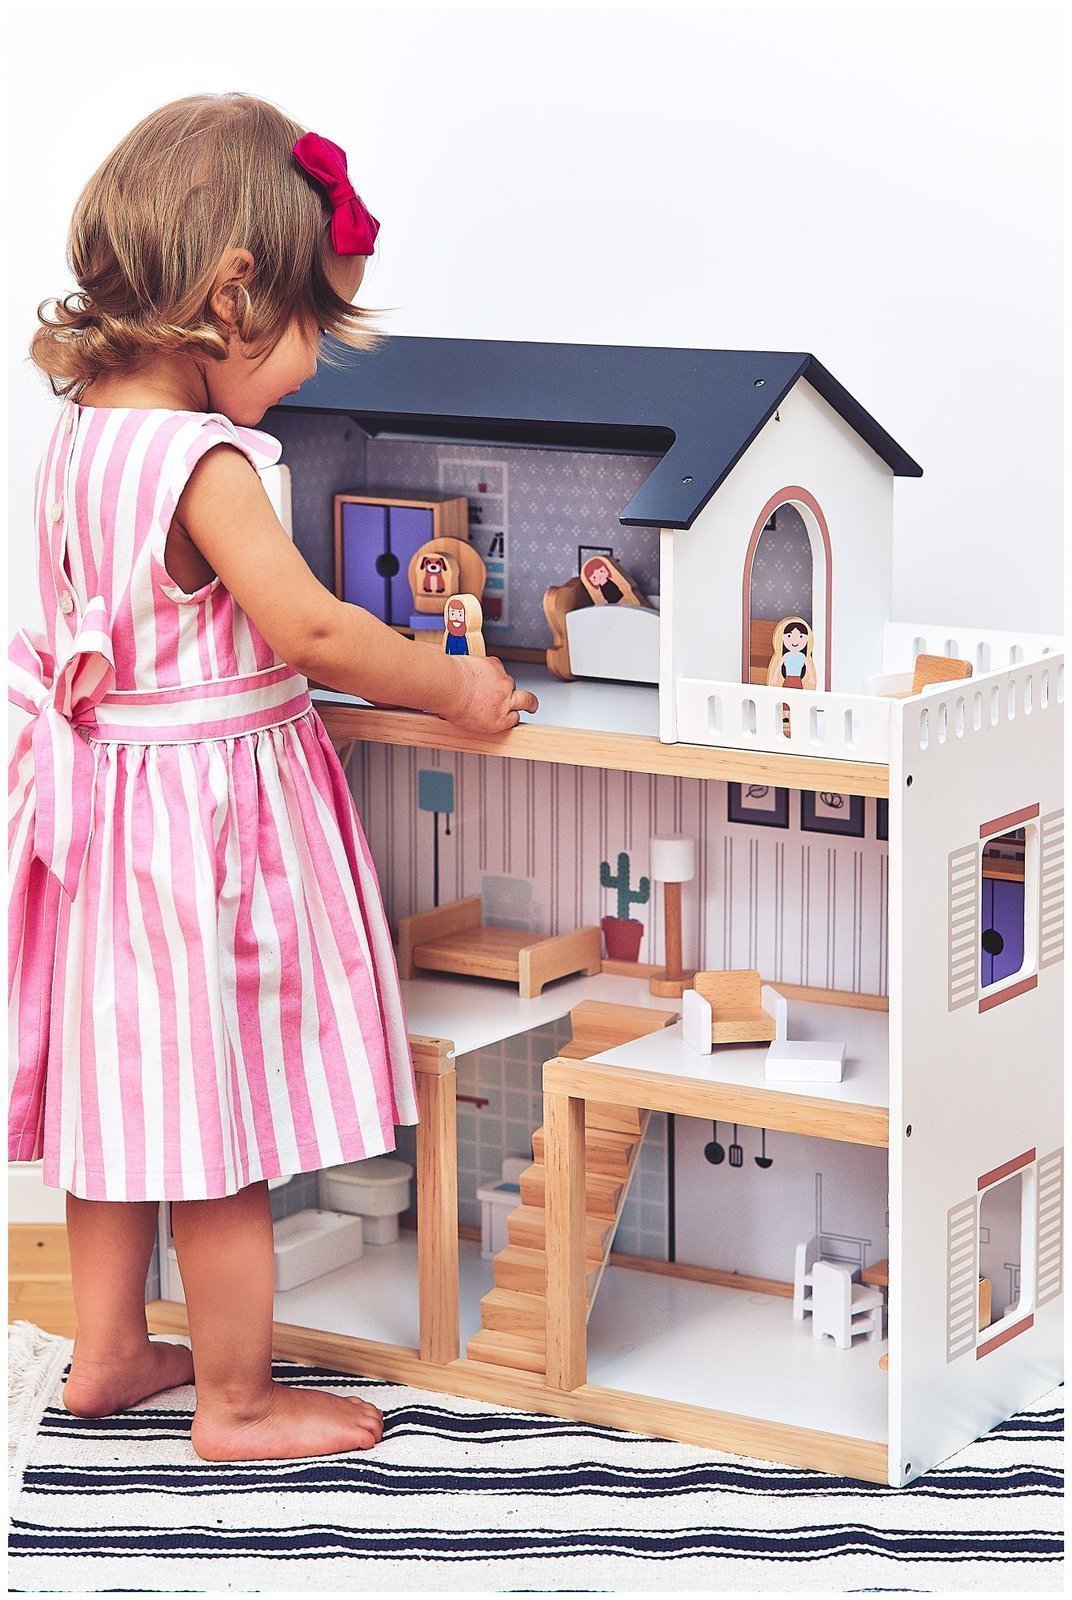 Maison de poupée en bois - Bonhomme de bois